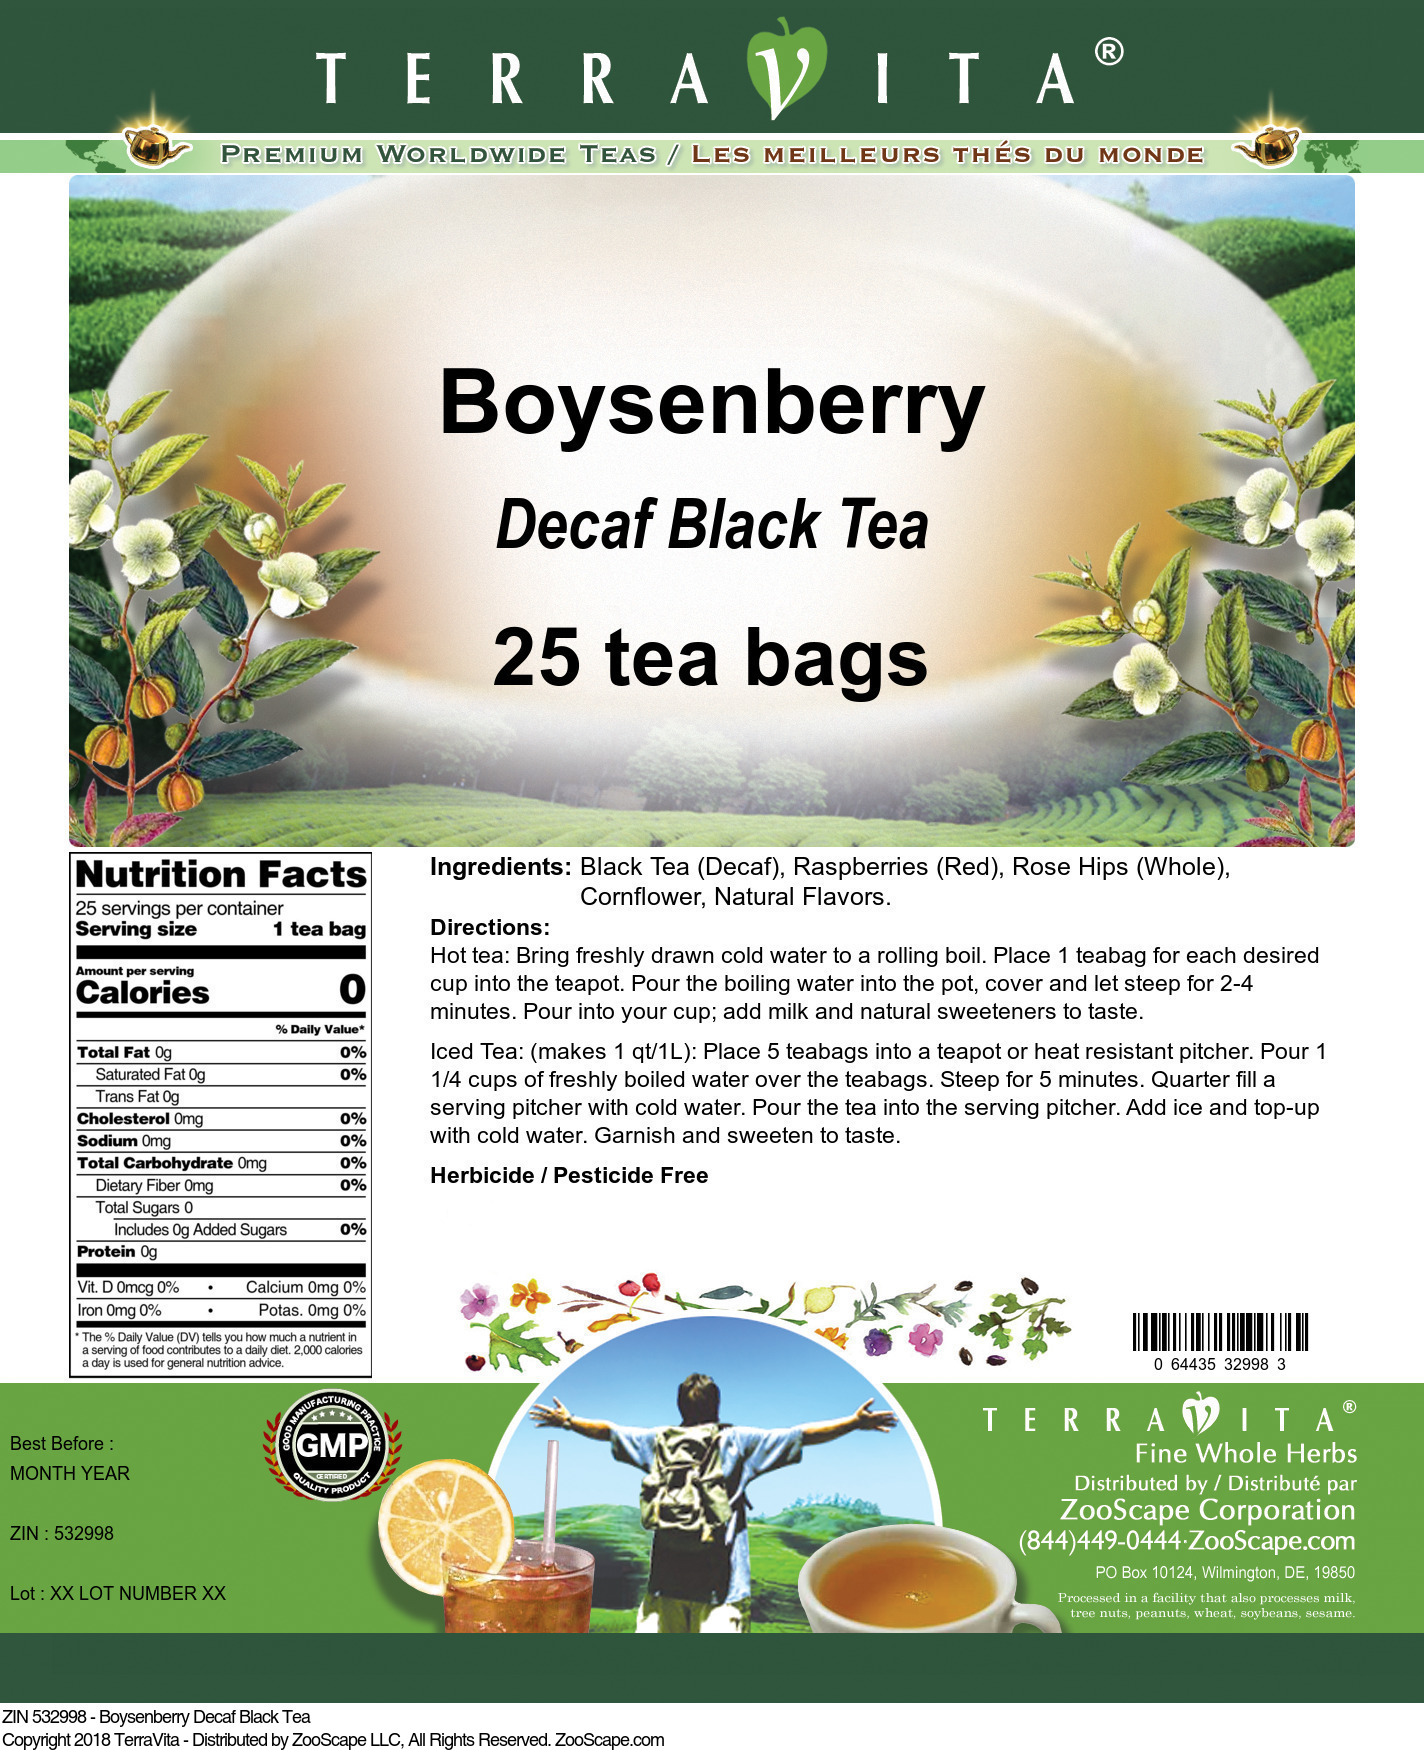 Boysenberry Decaf Black Tea - Label